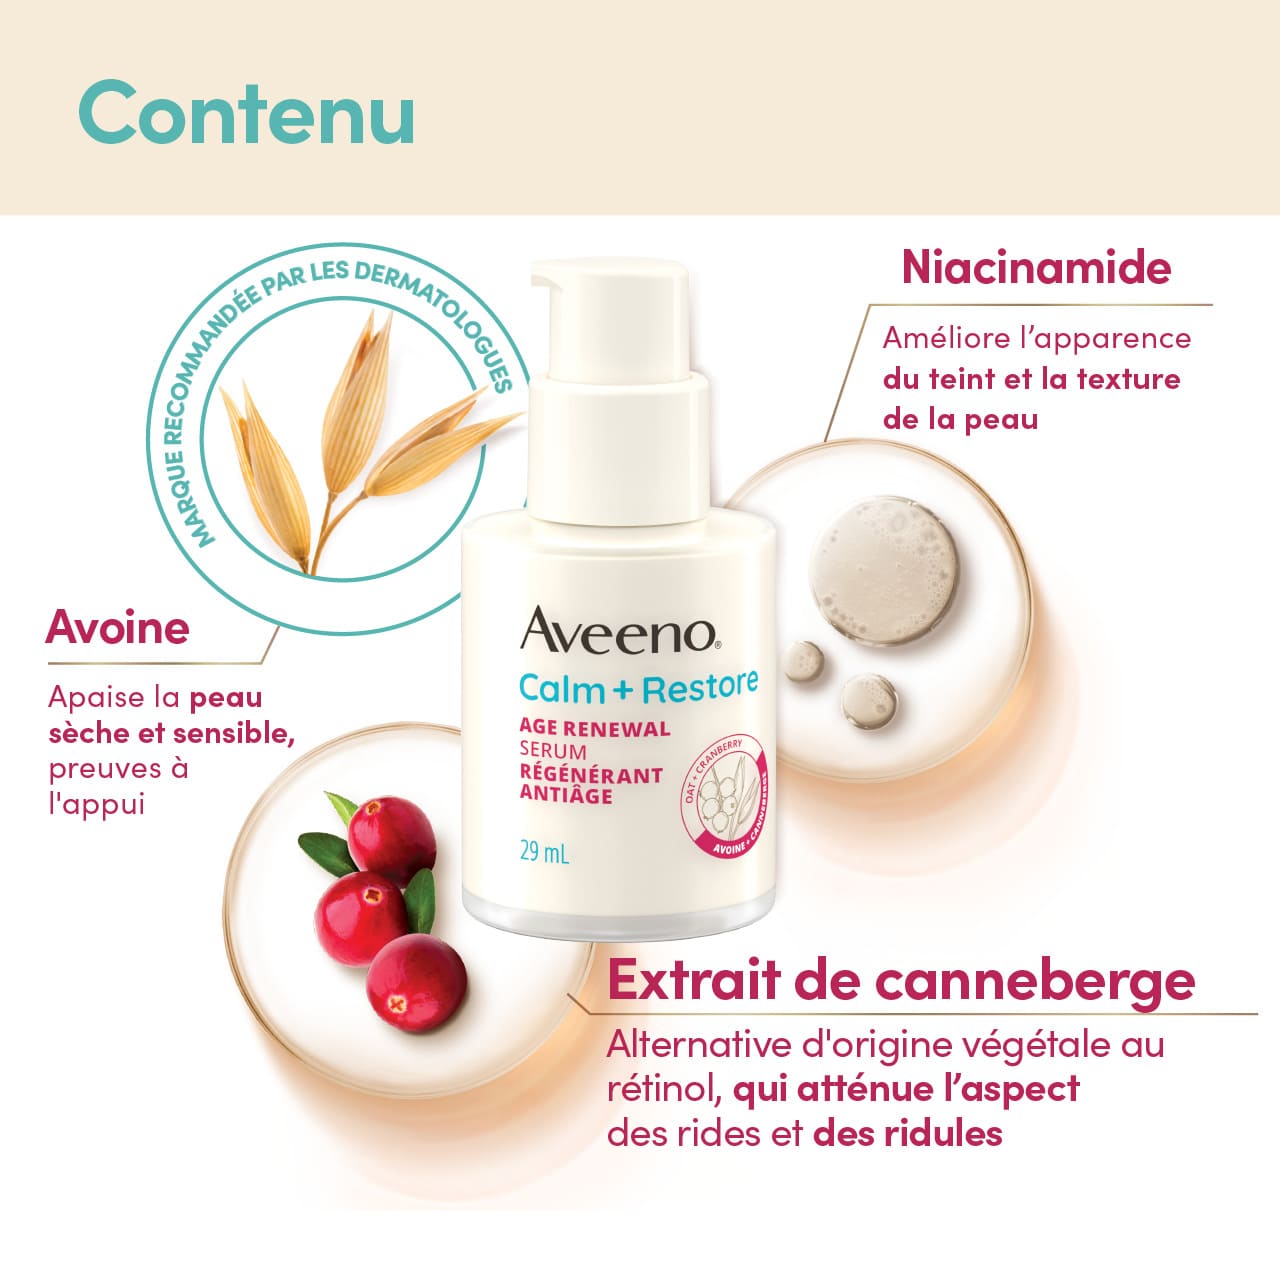 Ingrédients du sérum régénérant antiâge Aveeno® Calm + Restore : avoine, niacinamide, extrait de canneberge et leurs bienfaits.